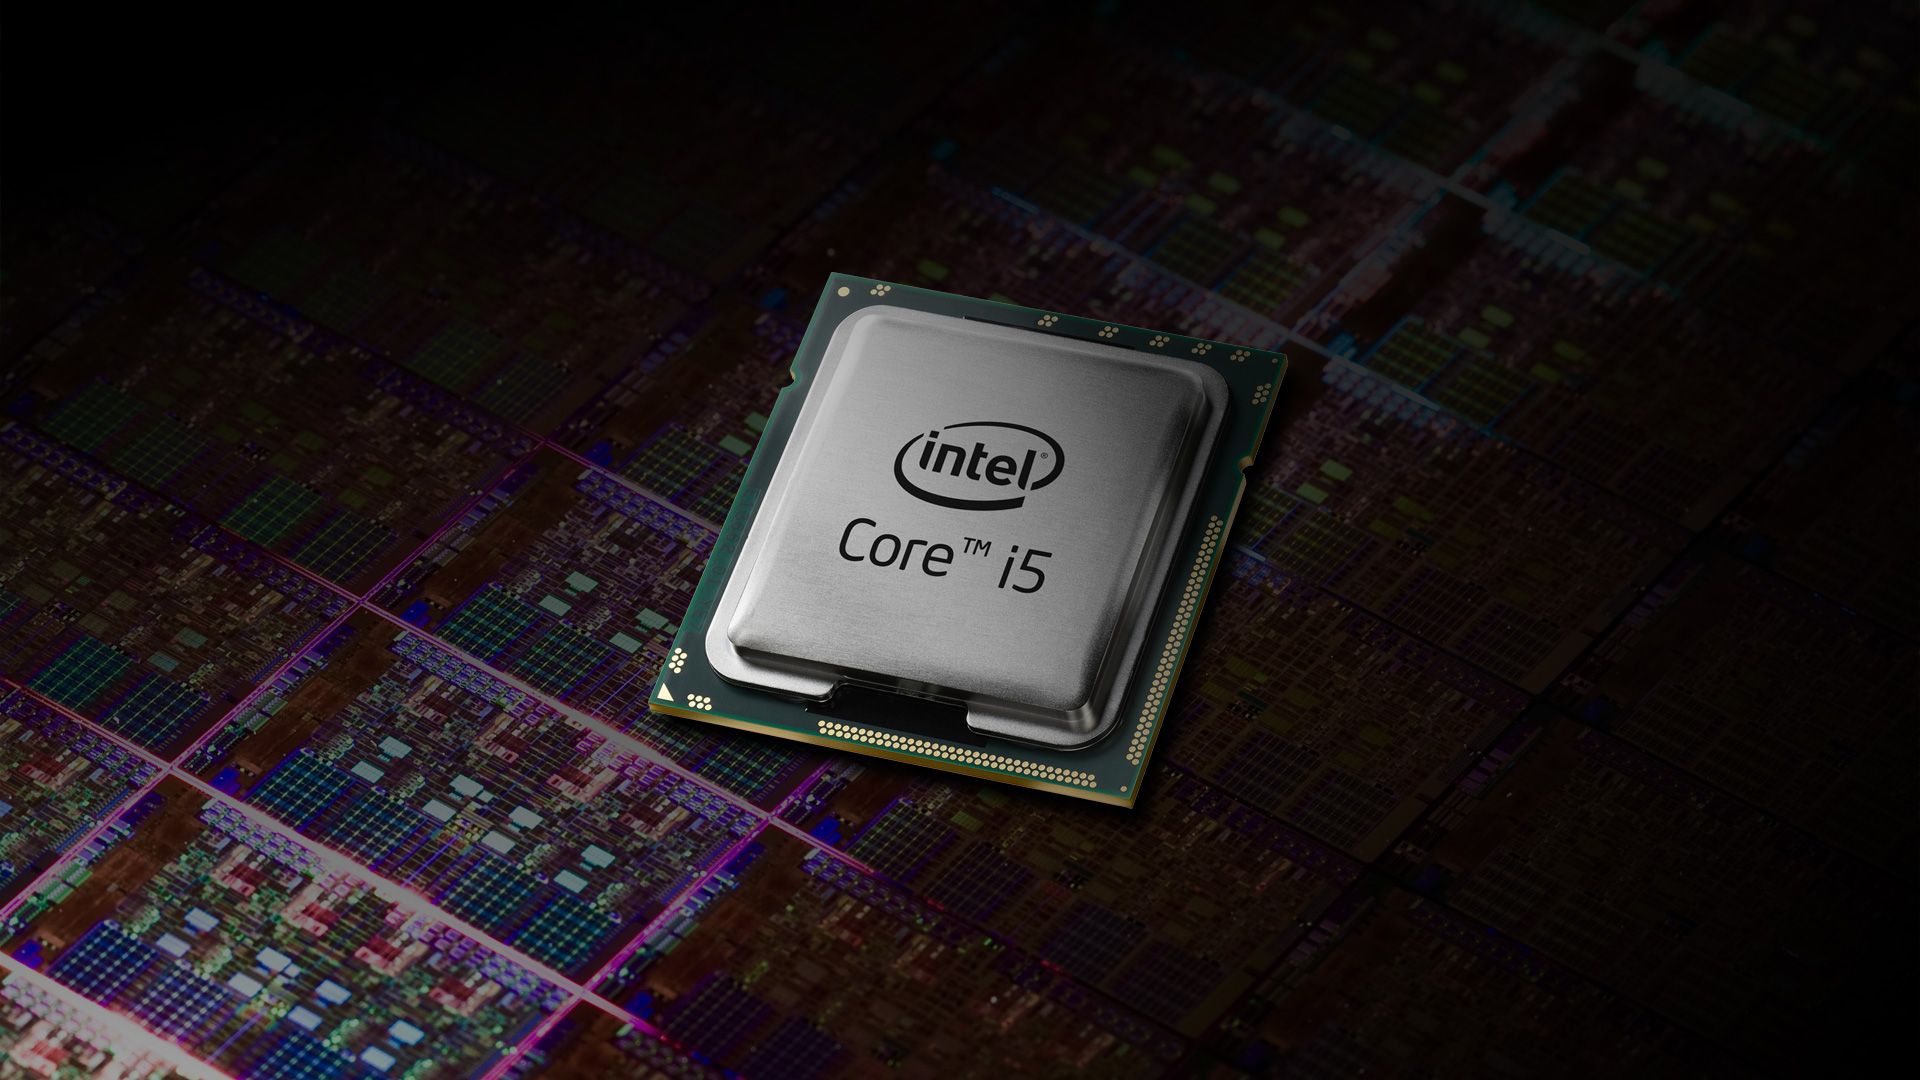 Intel Core I5 HD